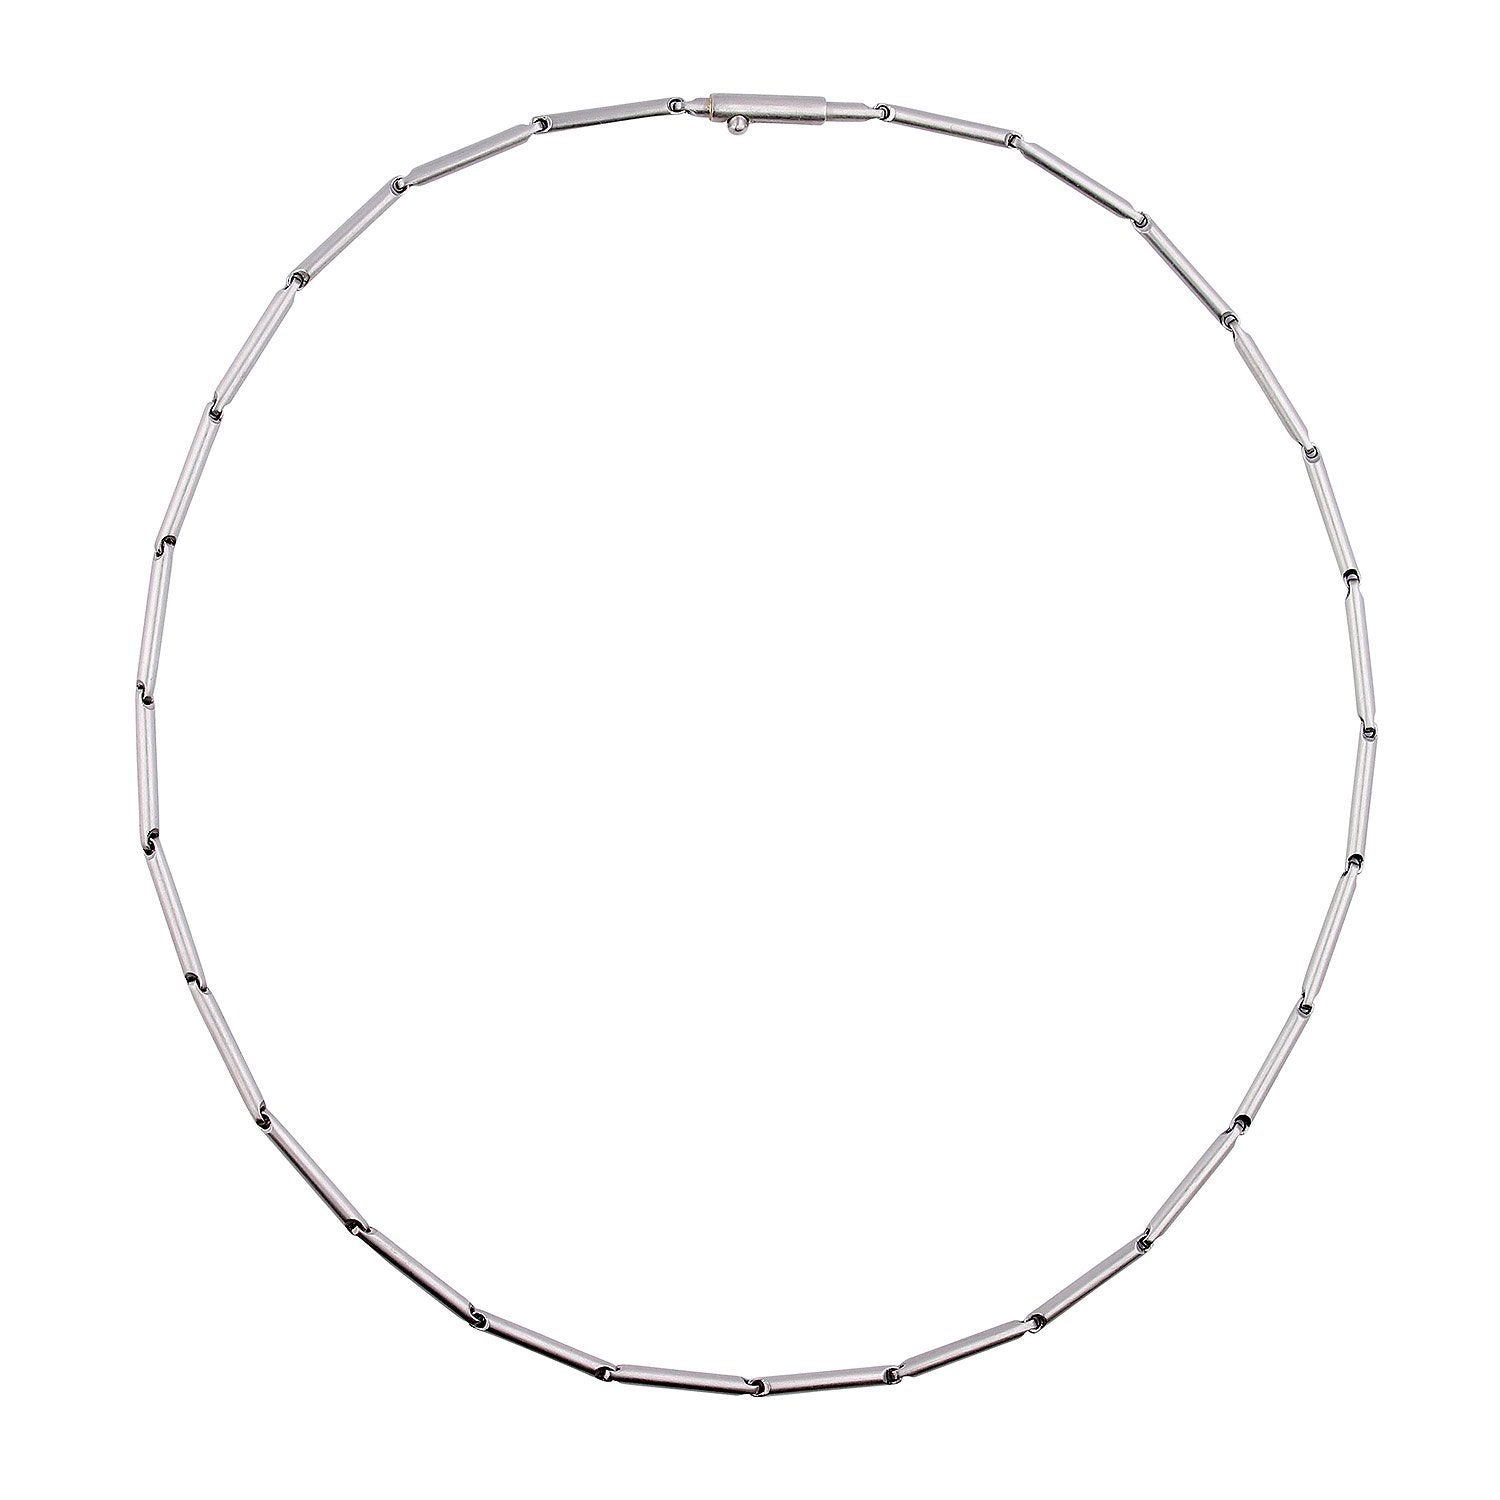 Henrich and Denzel Platinum bar link necklace Necklace Henrich & Denzel   